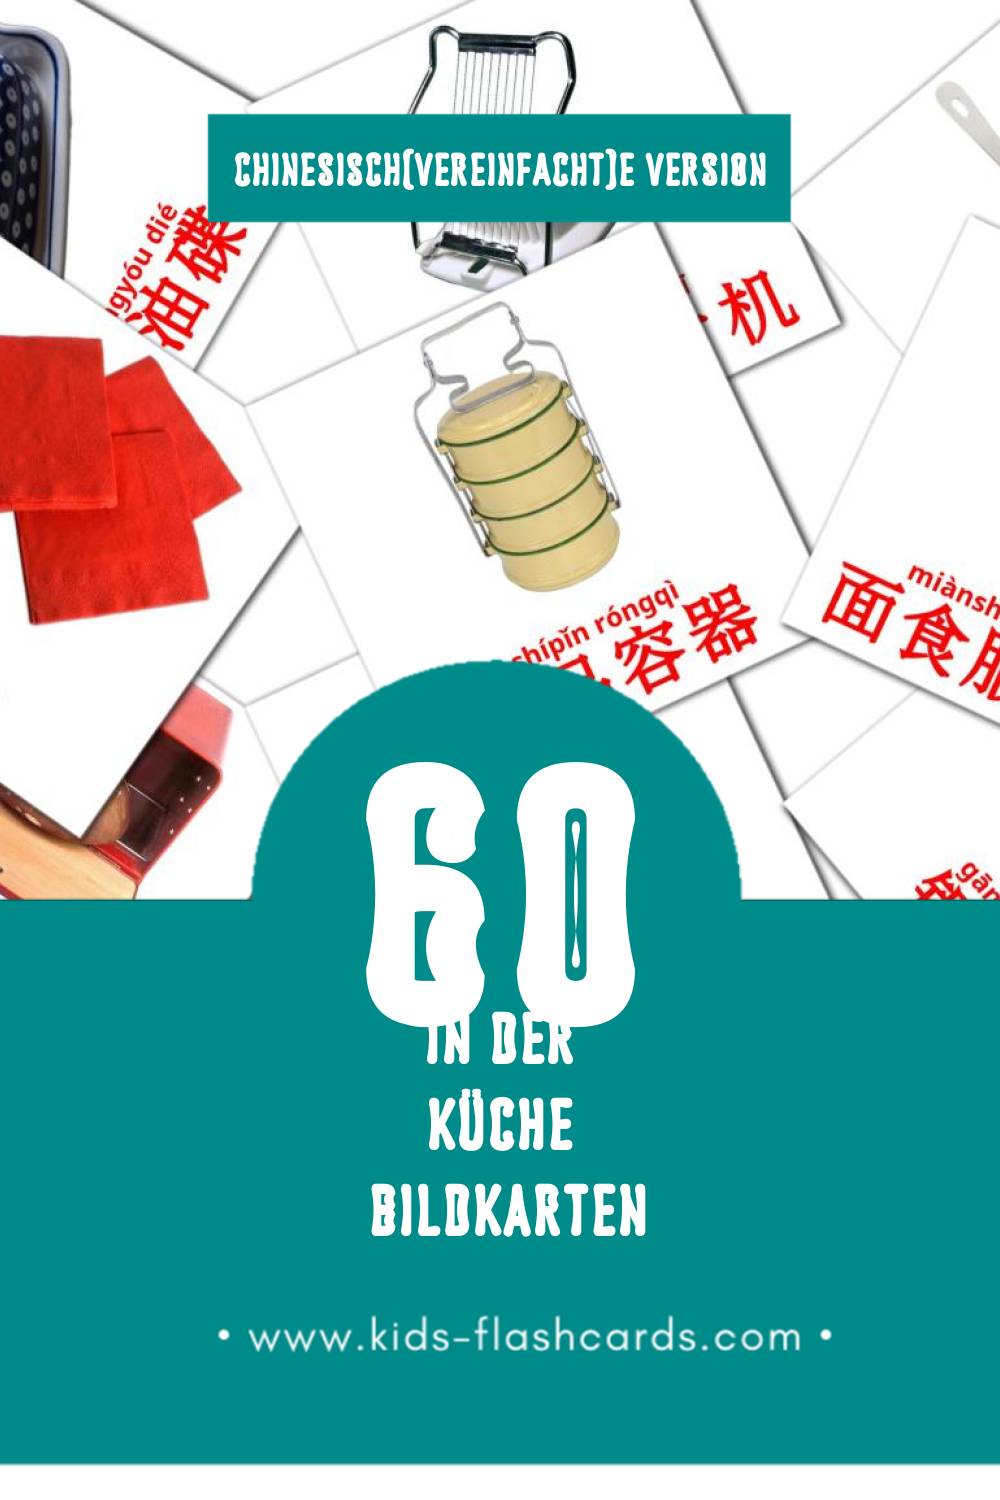 Visual 厨房房间 Flashcards für Kleinkinder (60 Karten in Chinesisch(Vereinfacht))